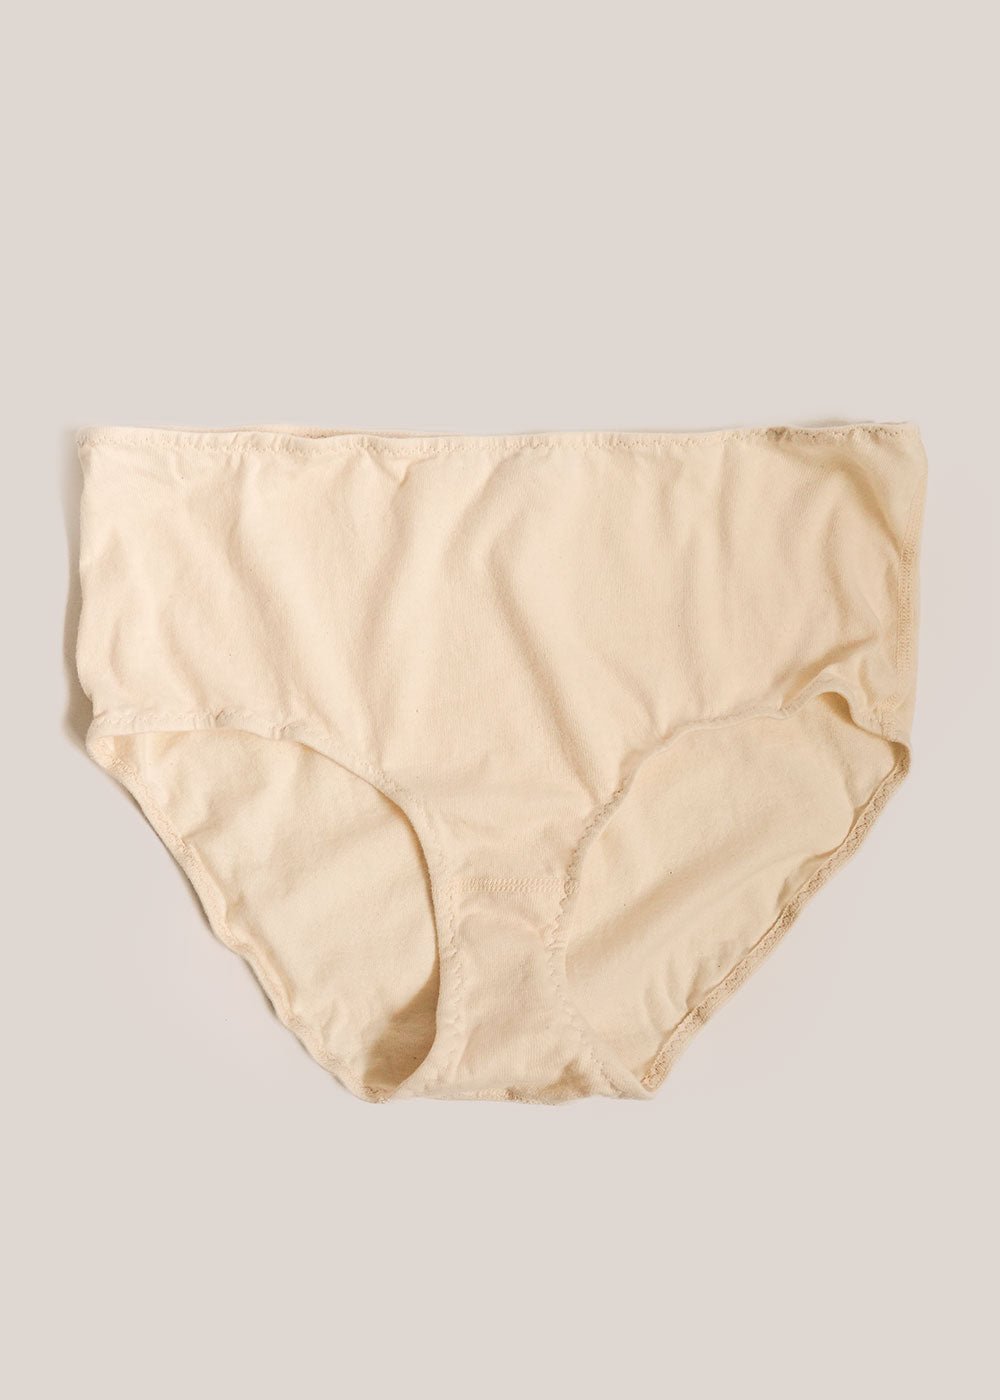 Cotton Briefs I High Leg Briefs I Organic Cotton Underwear Australia – The  Very Good Bra